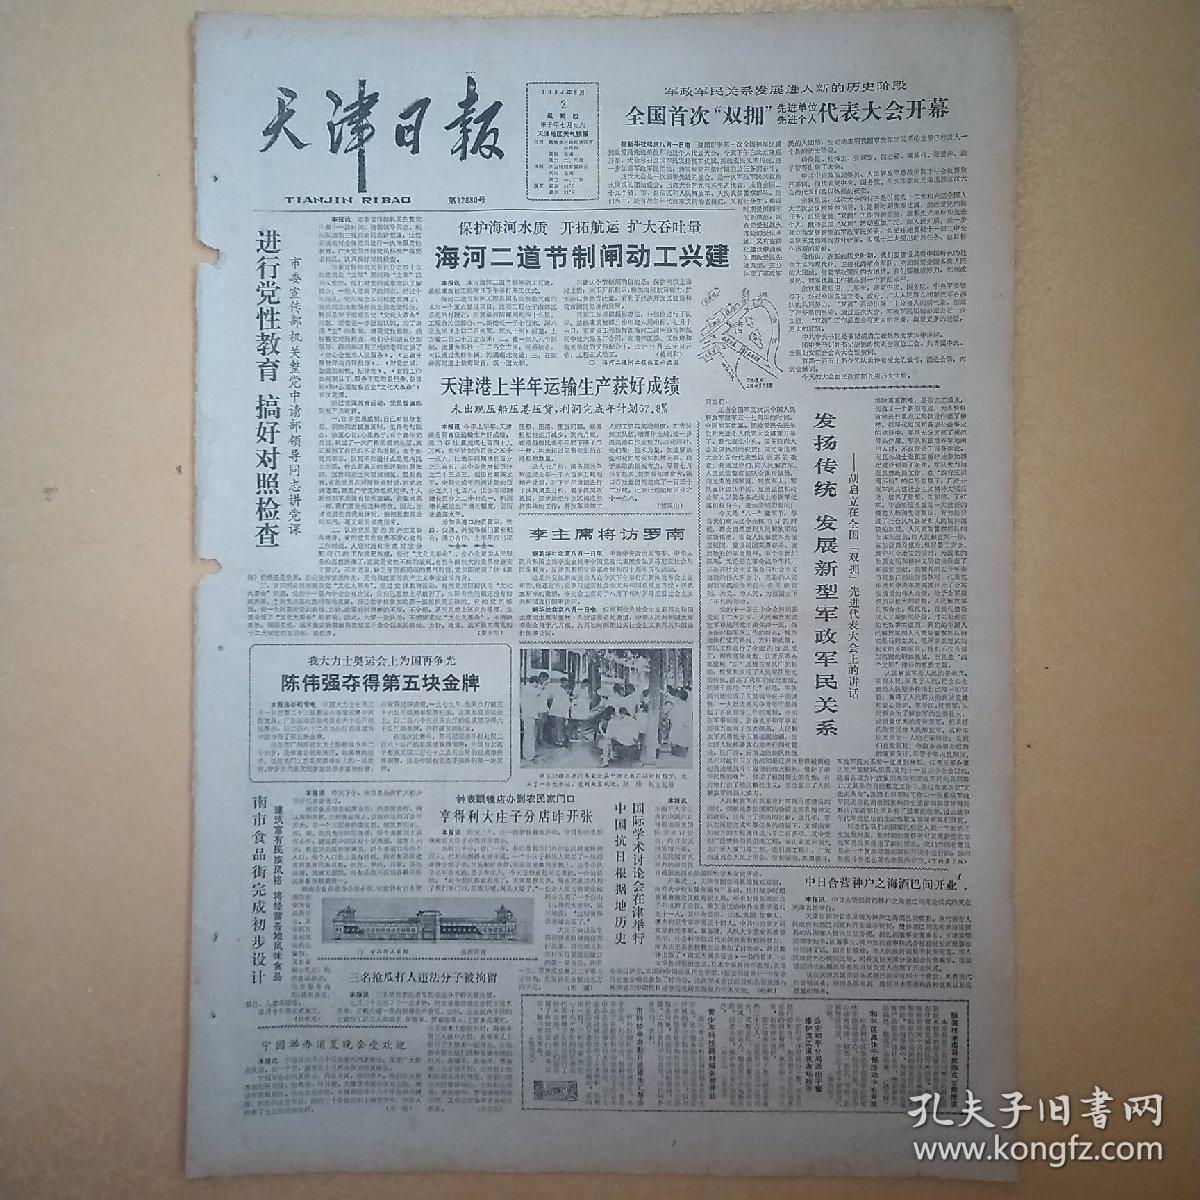 天津日报1984年8月2日(4开四版)海河二道节制闸动工兴建；
三更灯火五更鸡。